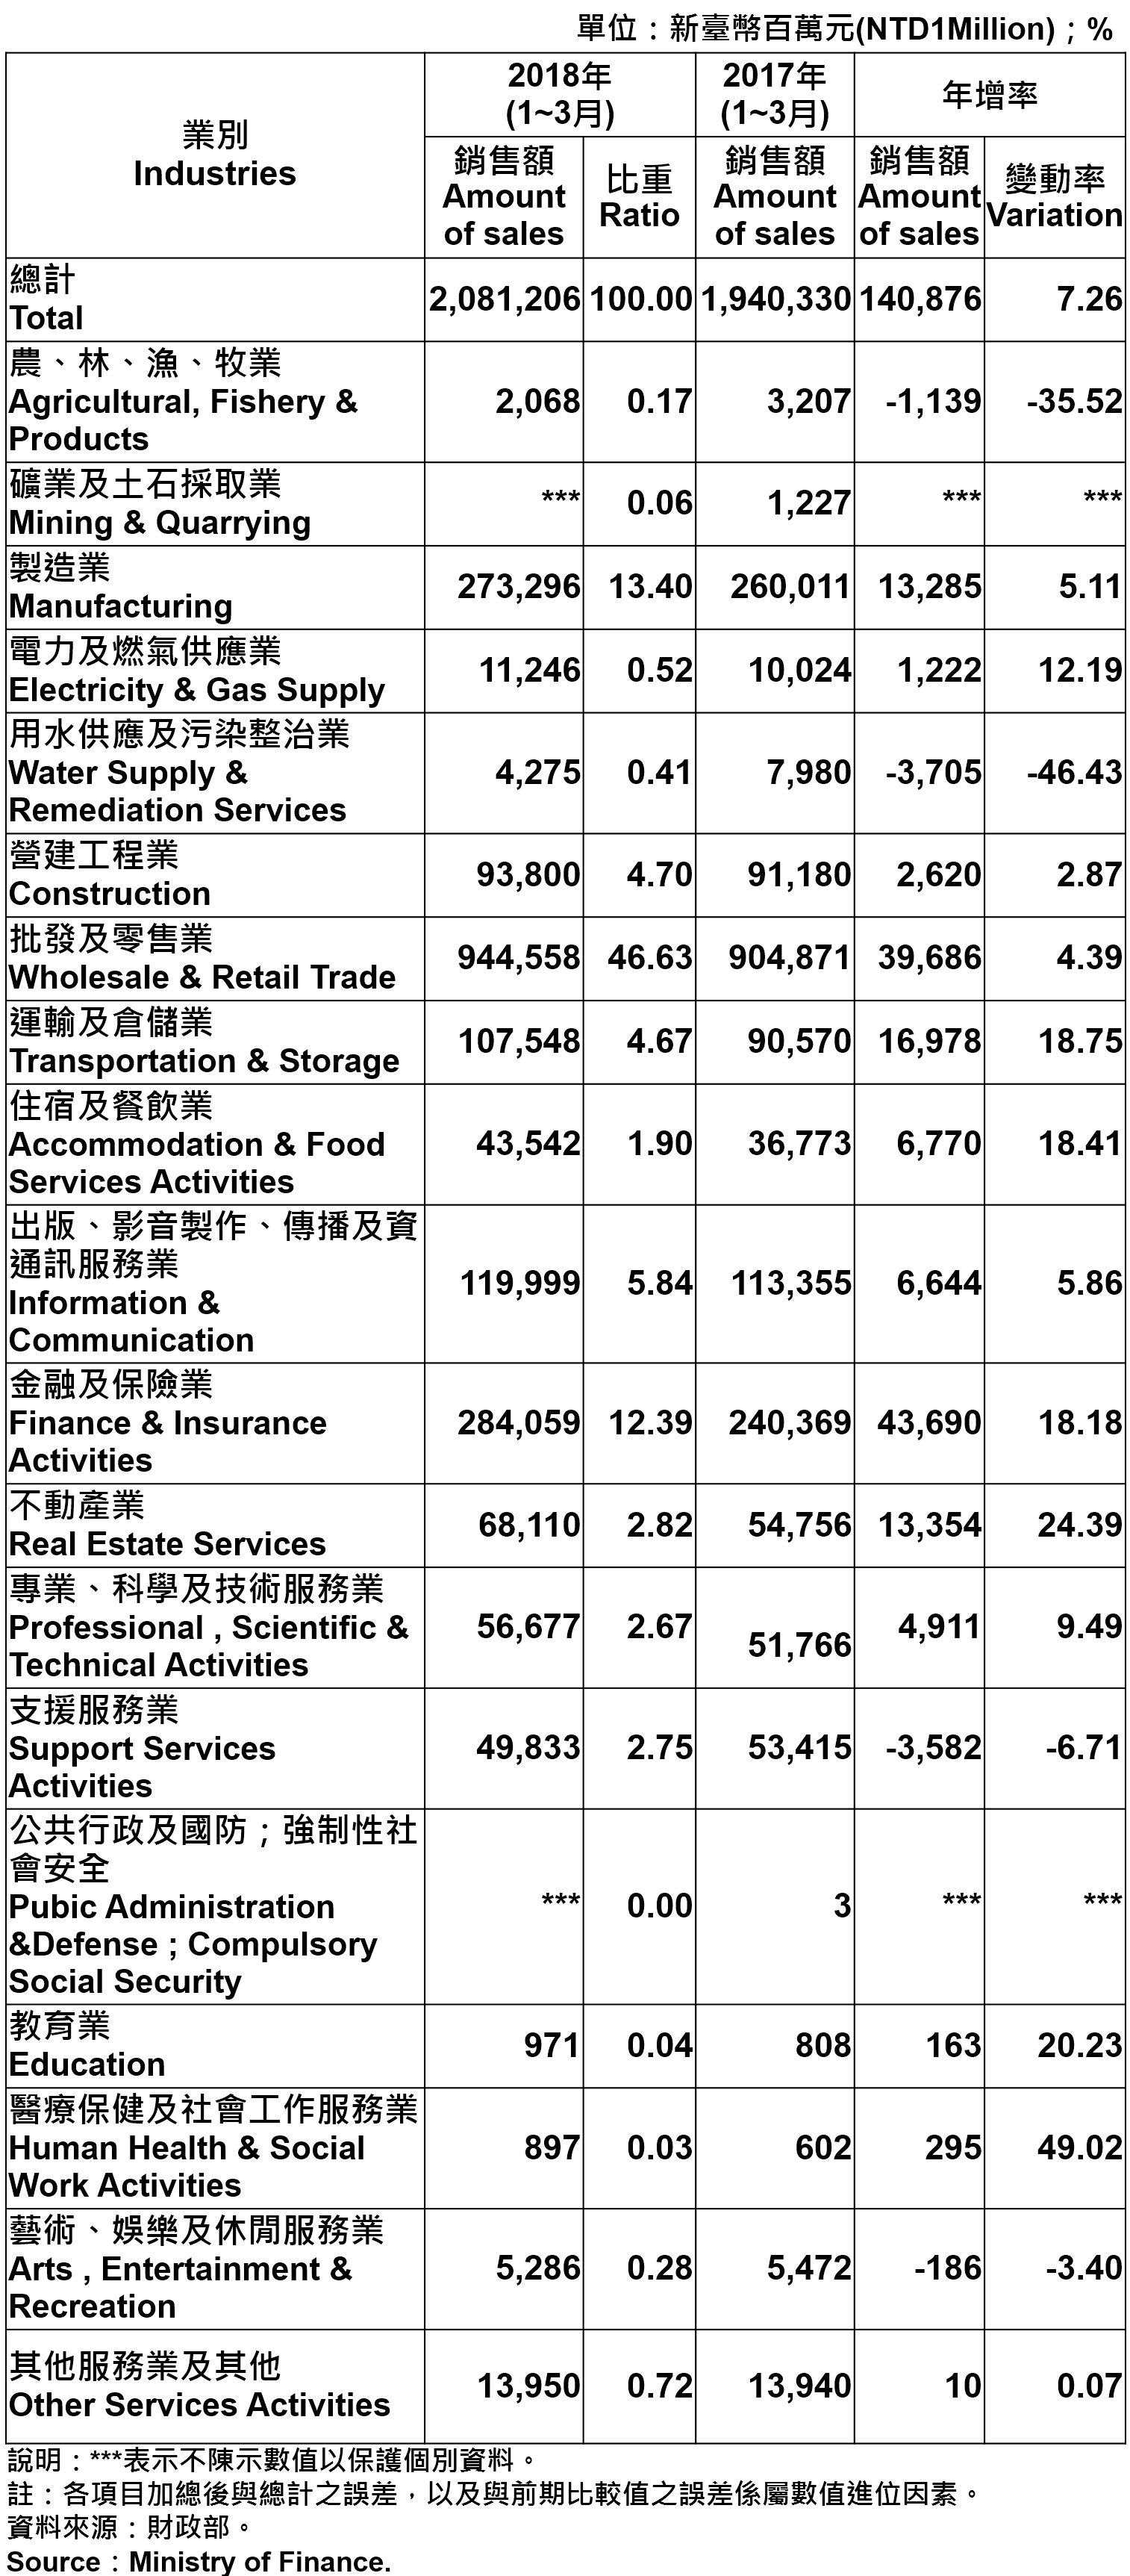 臺北市各產業公司行號銷售額 —2018Q1 Operating Income for Business Enterprises in Taipei City—2018Q1